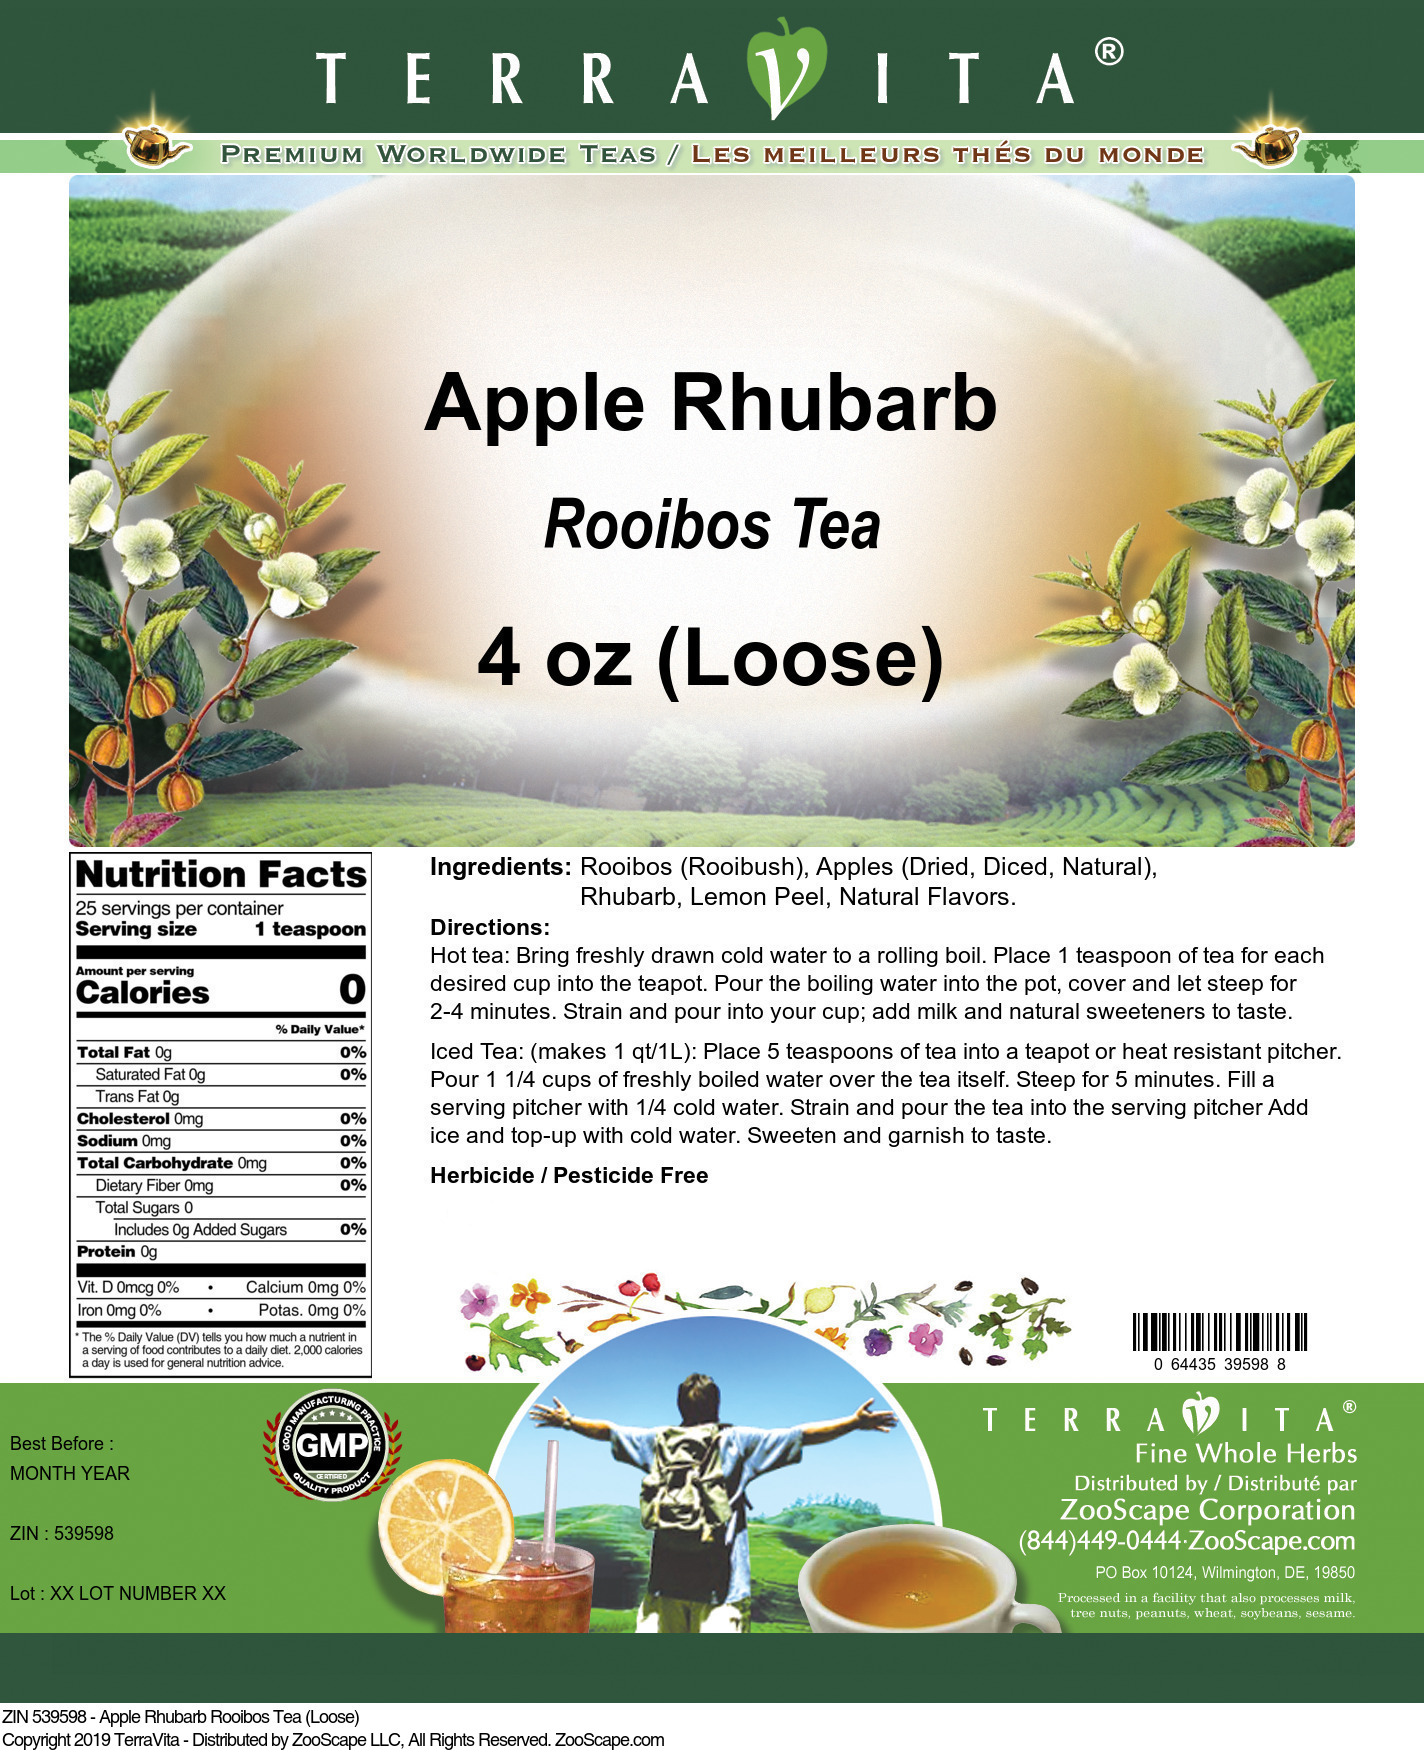 Apple Rhubarb Rooibos Tea (Loose) - Label